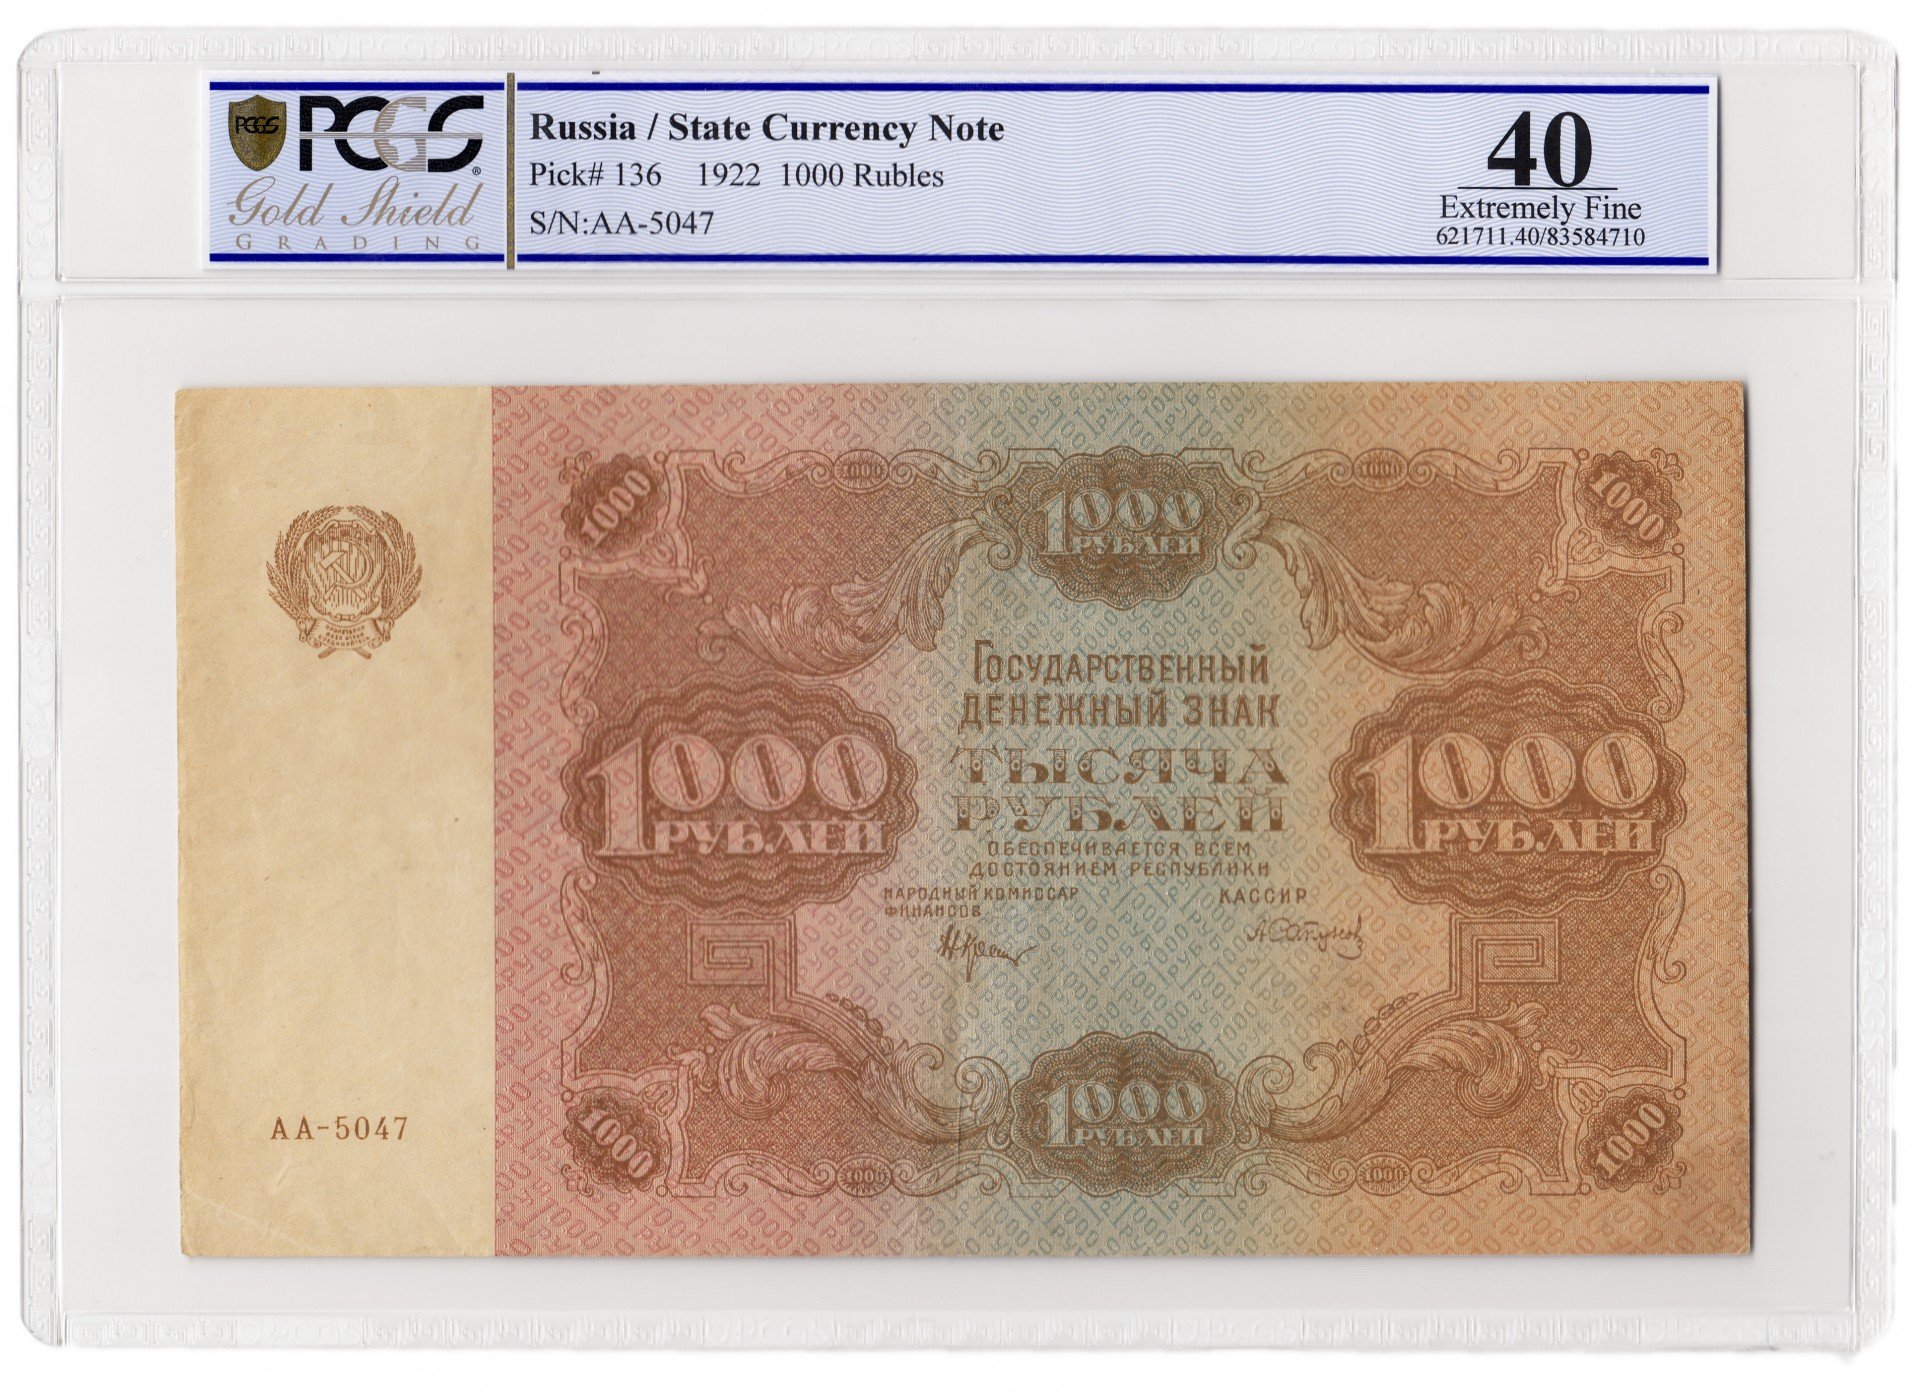 60 тысяч рублей в сумах. 1000 Рублей 1922. 1000 Рублей 1922 банкнота. 50 Рублей 1922 слаб. Тысяча рублей золотом 1922.